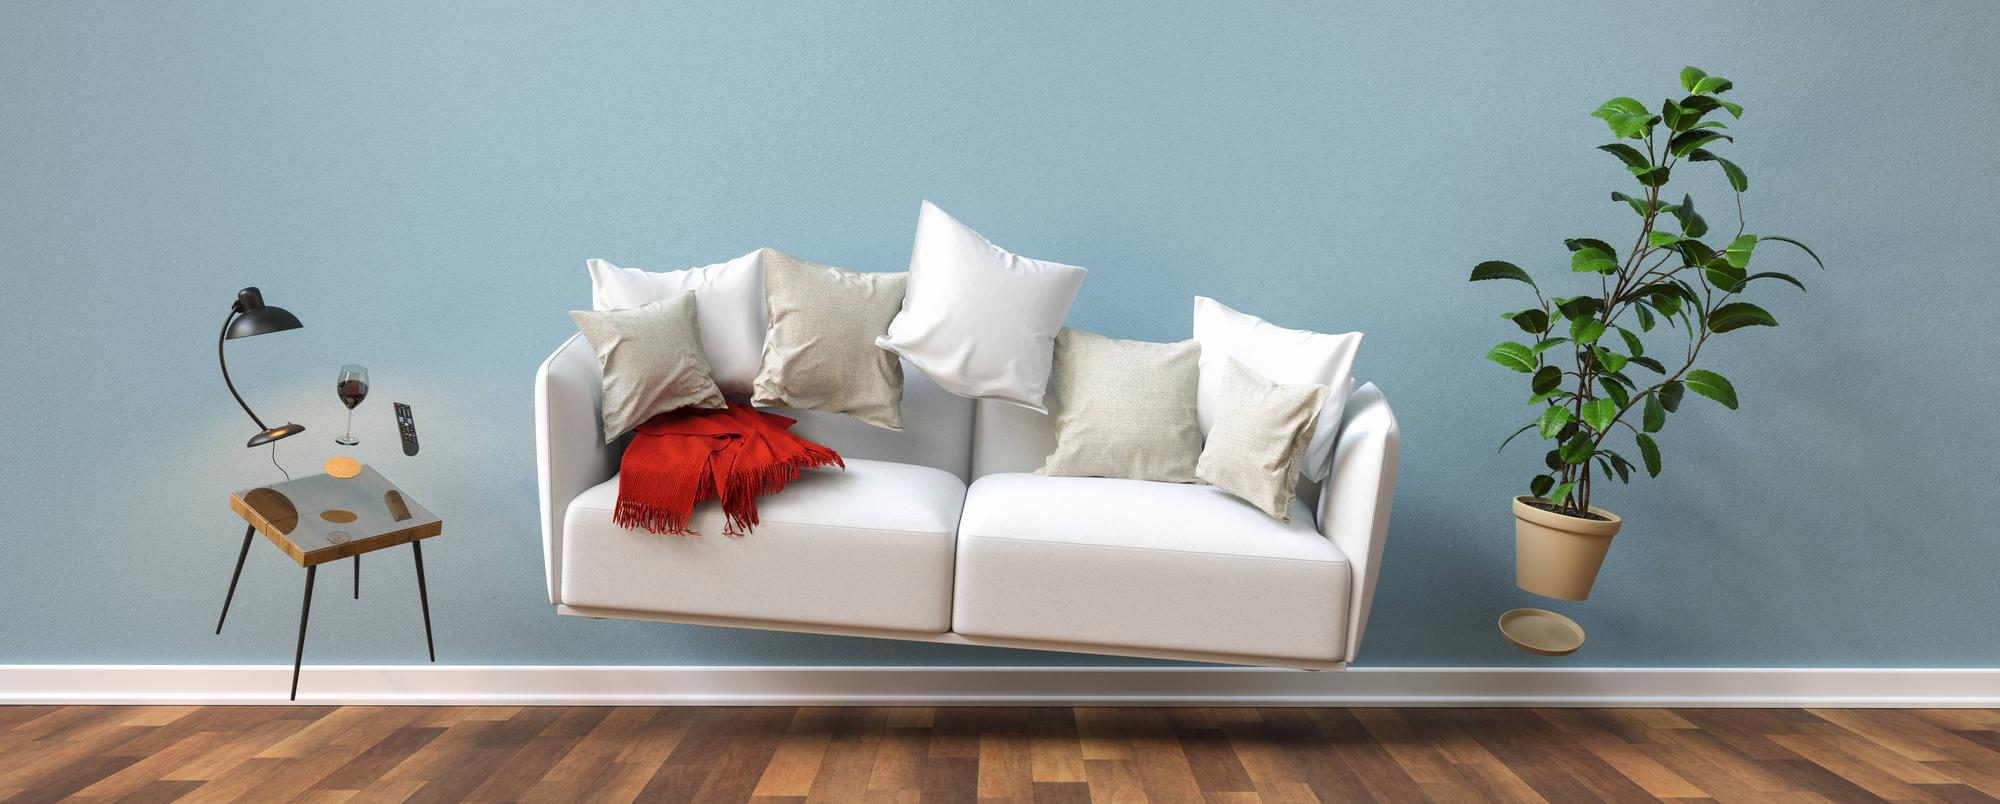 Dlaczego warto zainwestować w miękką sofę?